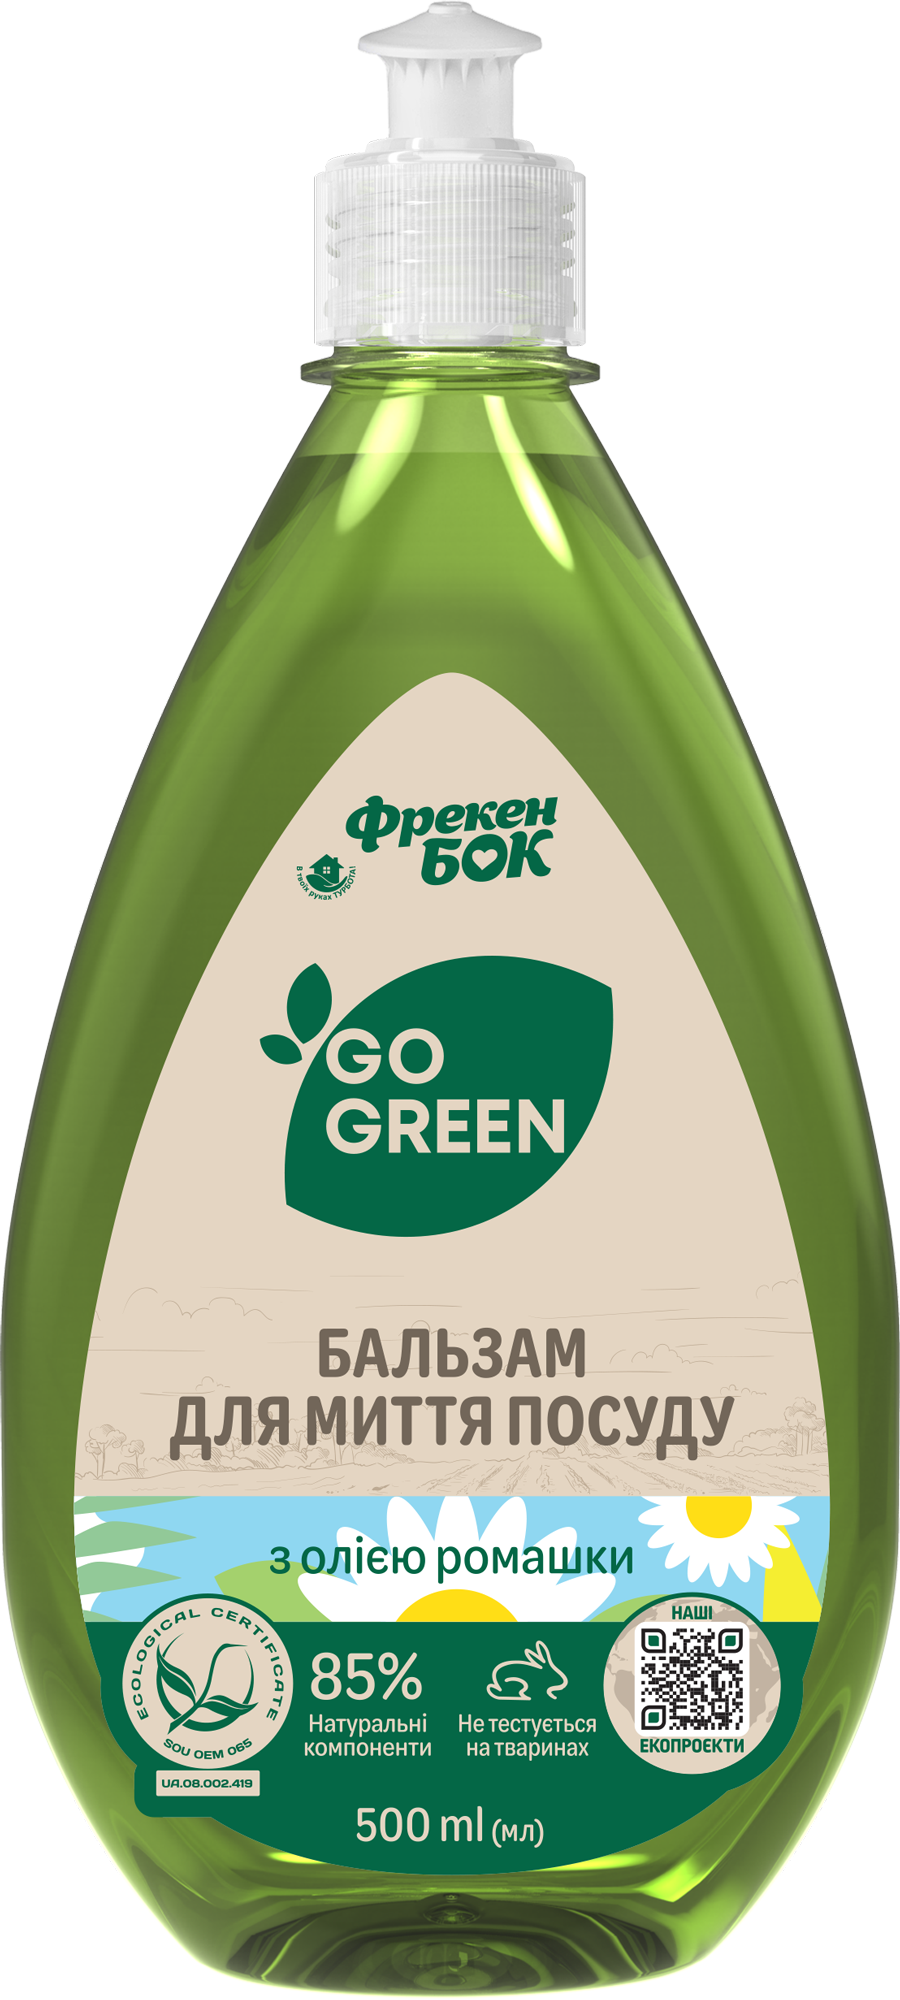 Засіб для миття посуду Бок Go Green, з олією Ромашки, 500 мл - фото 1